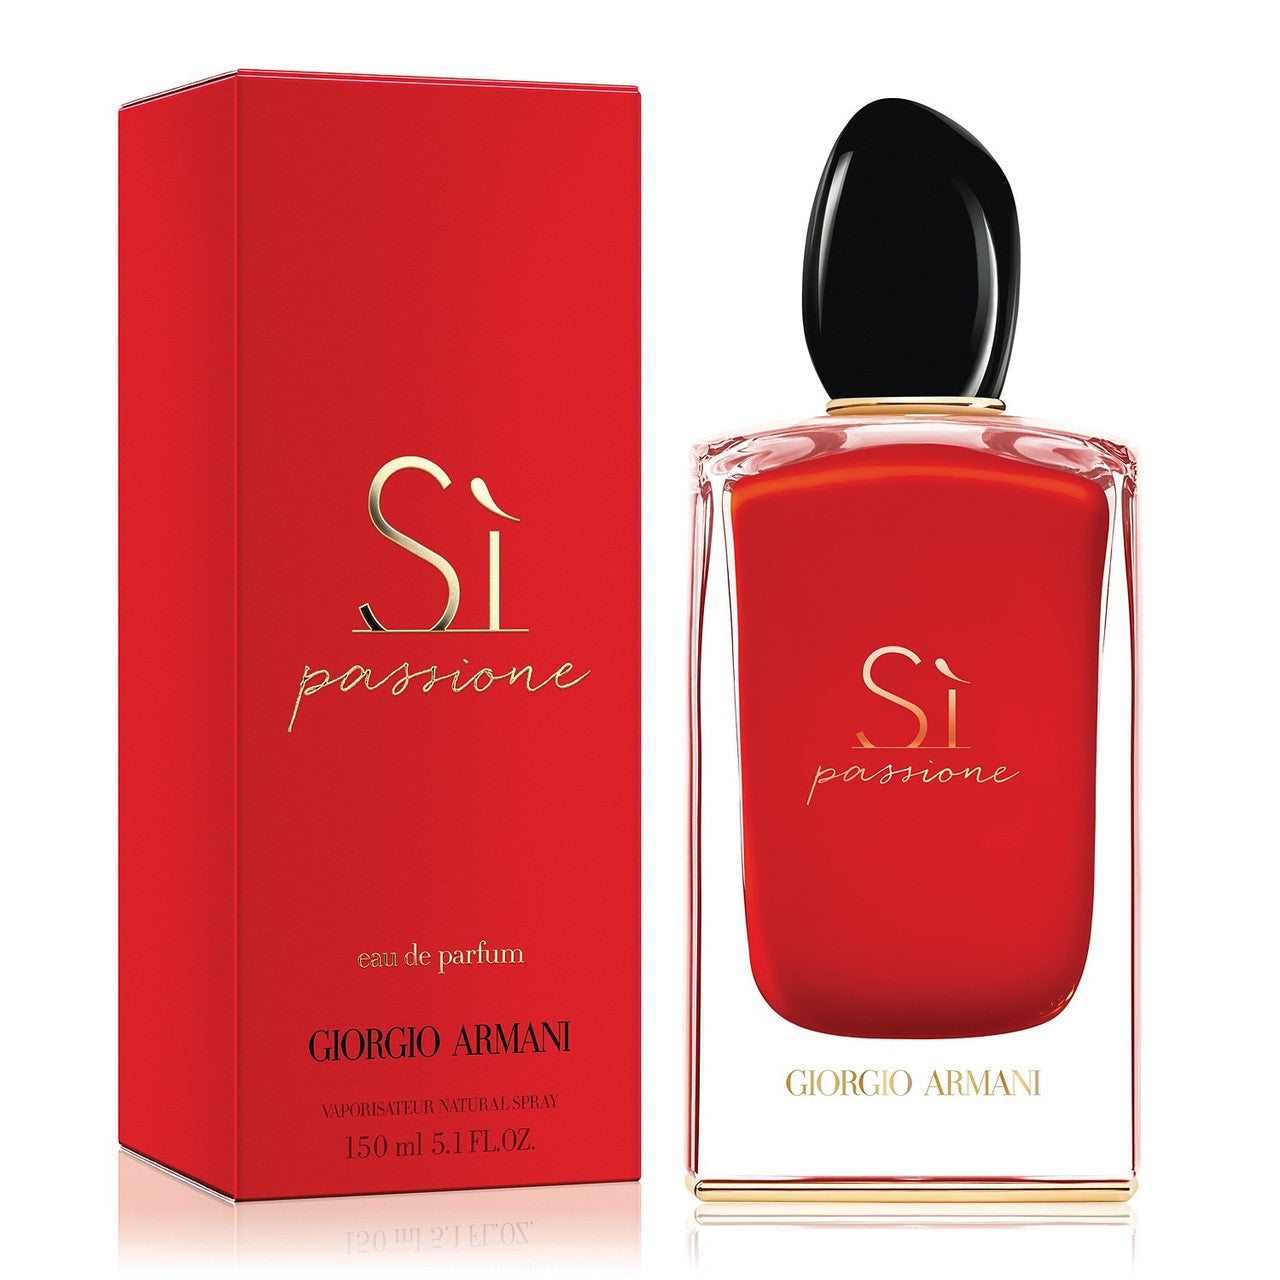 Sì Passione By Giorgio Armani For Women 5.1 oz Eau De Parfum Spray